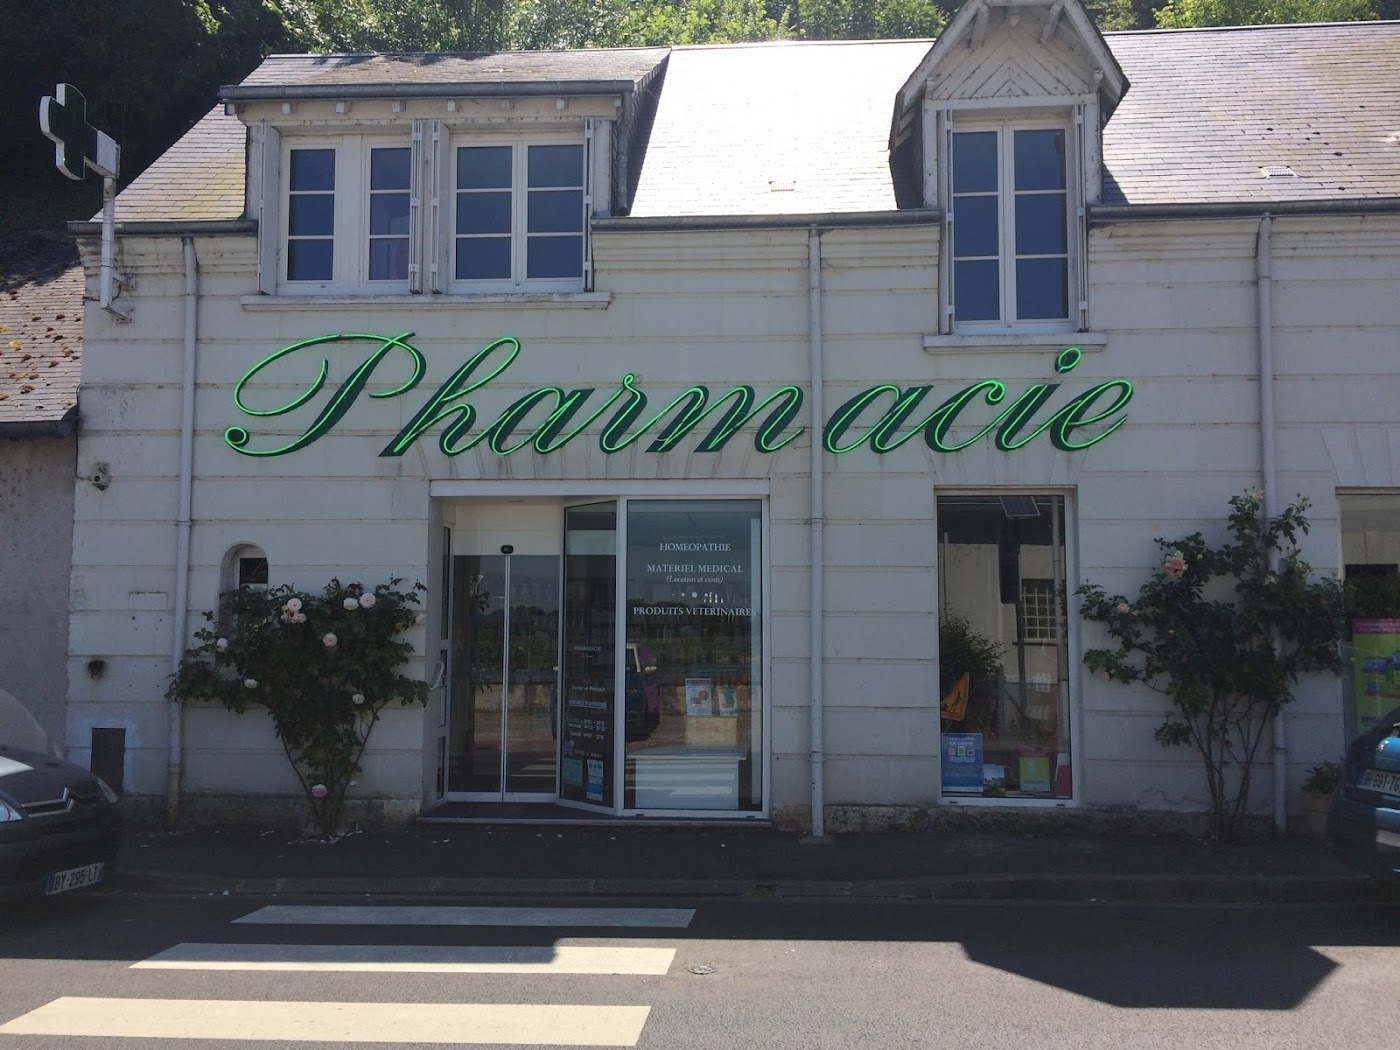 Pharmacie de Chaumont sur Loire